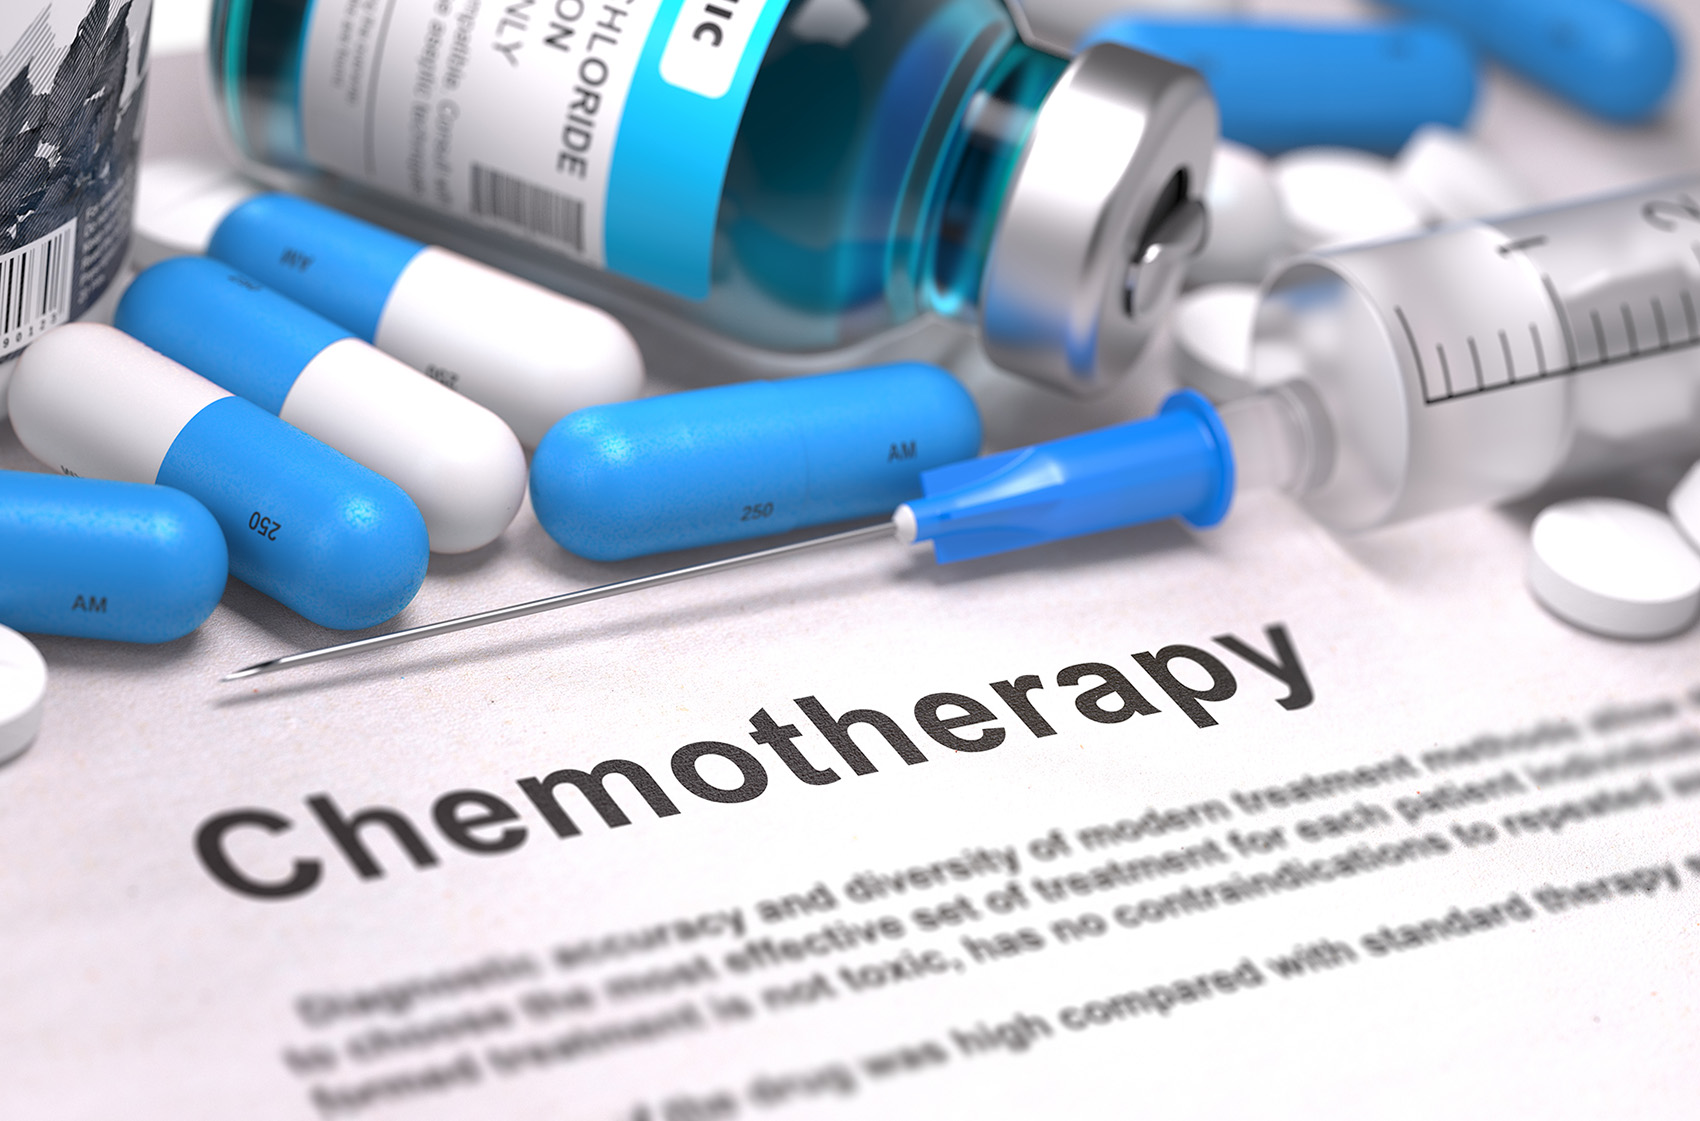 Chemotherapy - Alternative Chemo - Chemo therapy Miami - Miami chemotherapy - CyberKnife and Chemotherapy